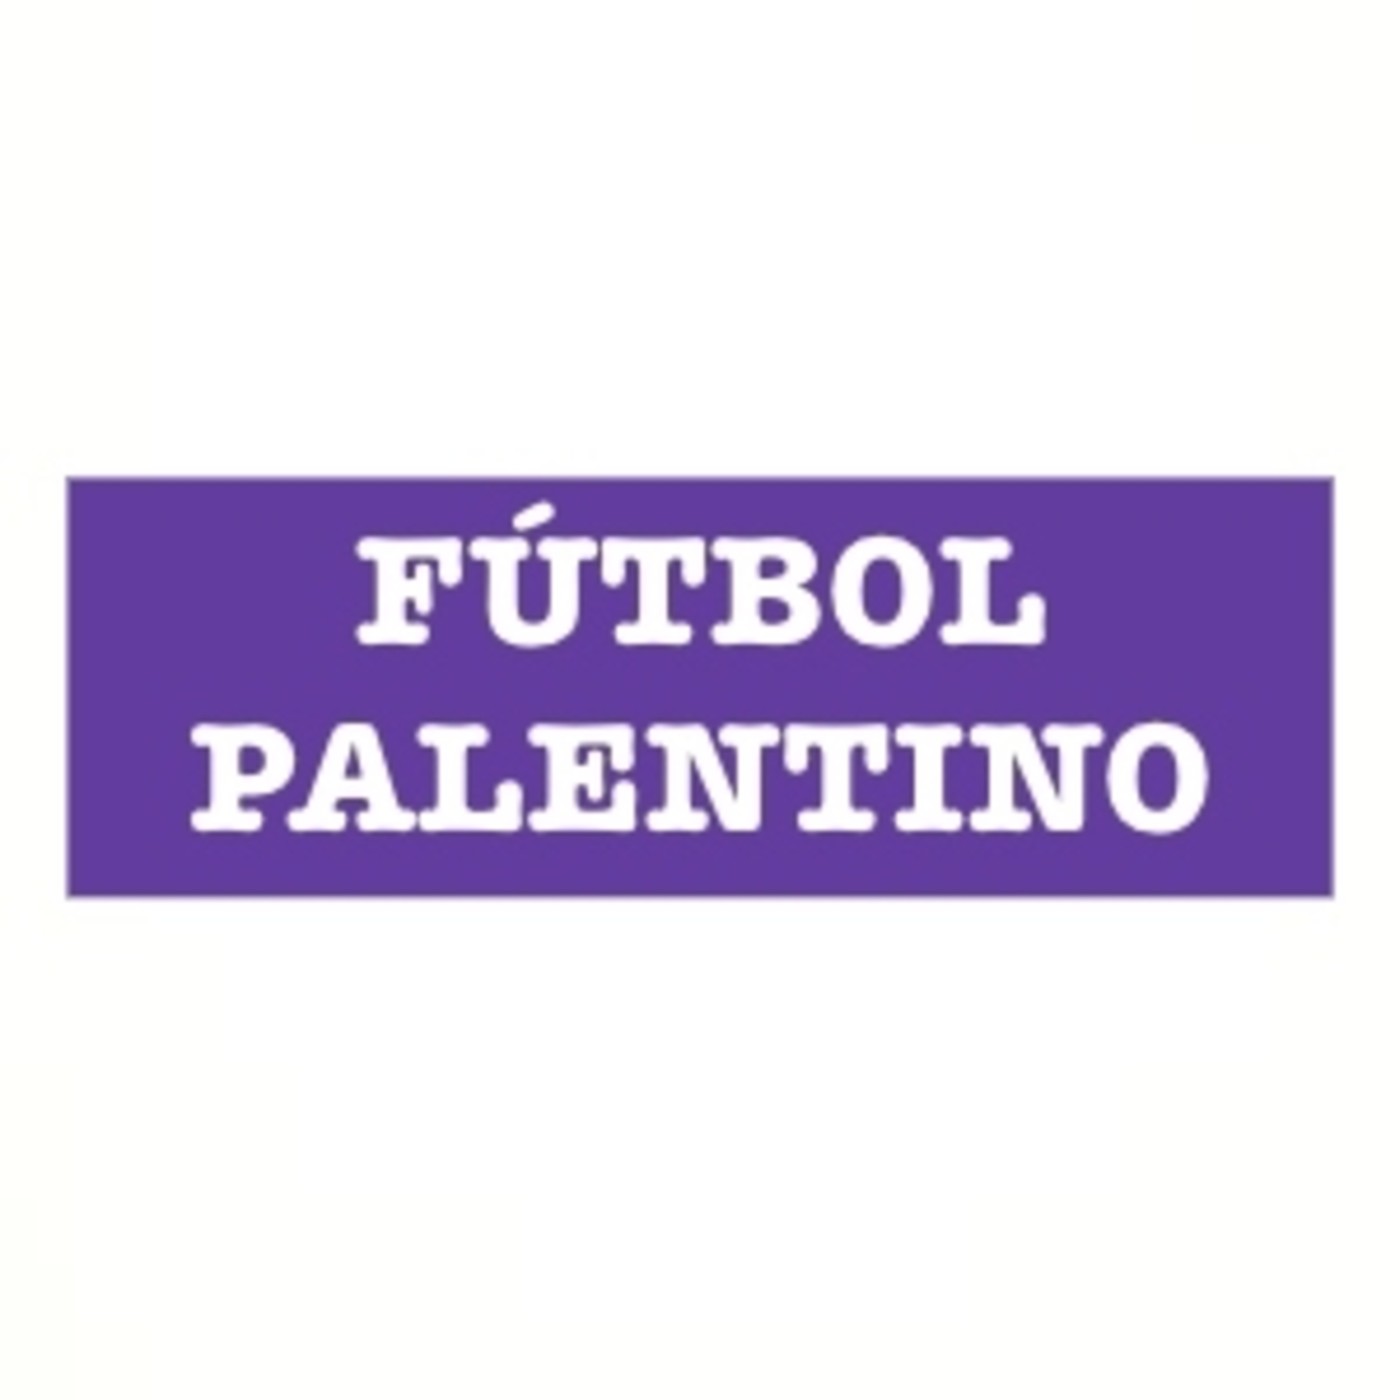 Fútbol Palentino